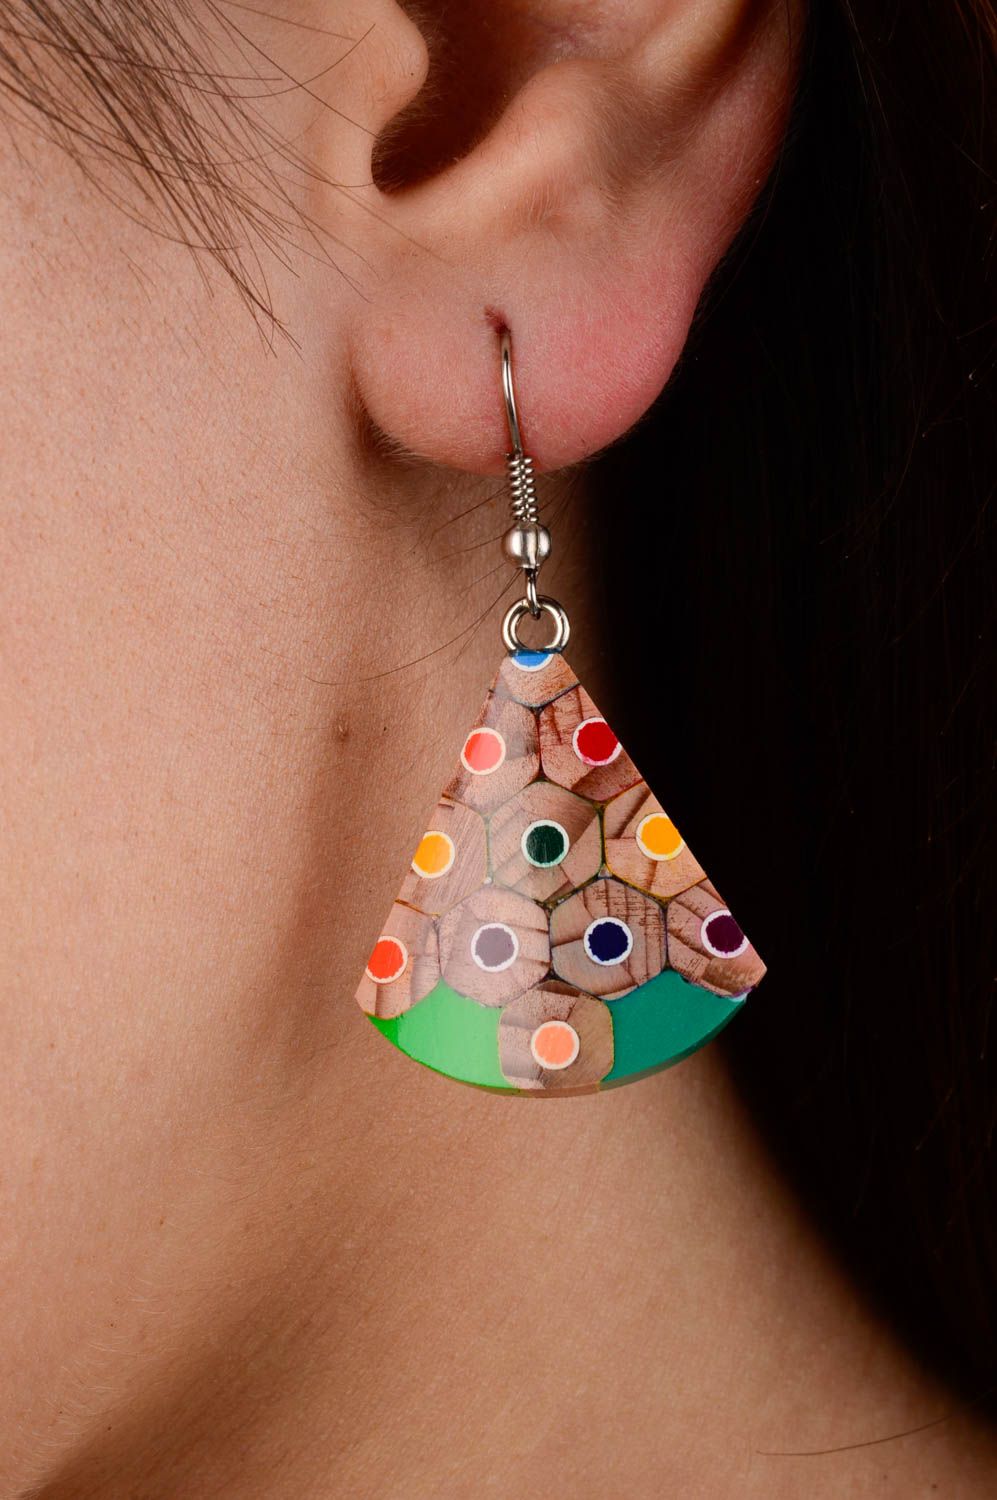 Stylish wooden earrings with charms long earrings unusual wooden earrings photo 2